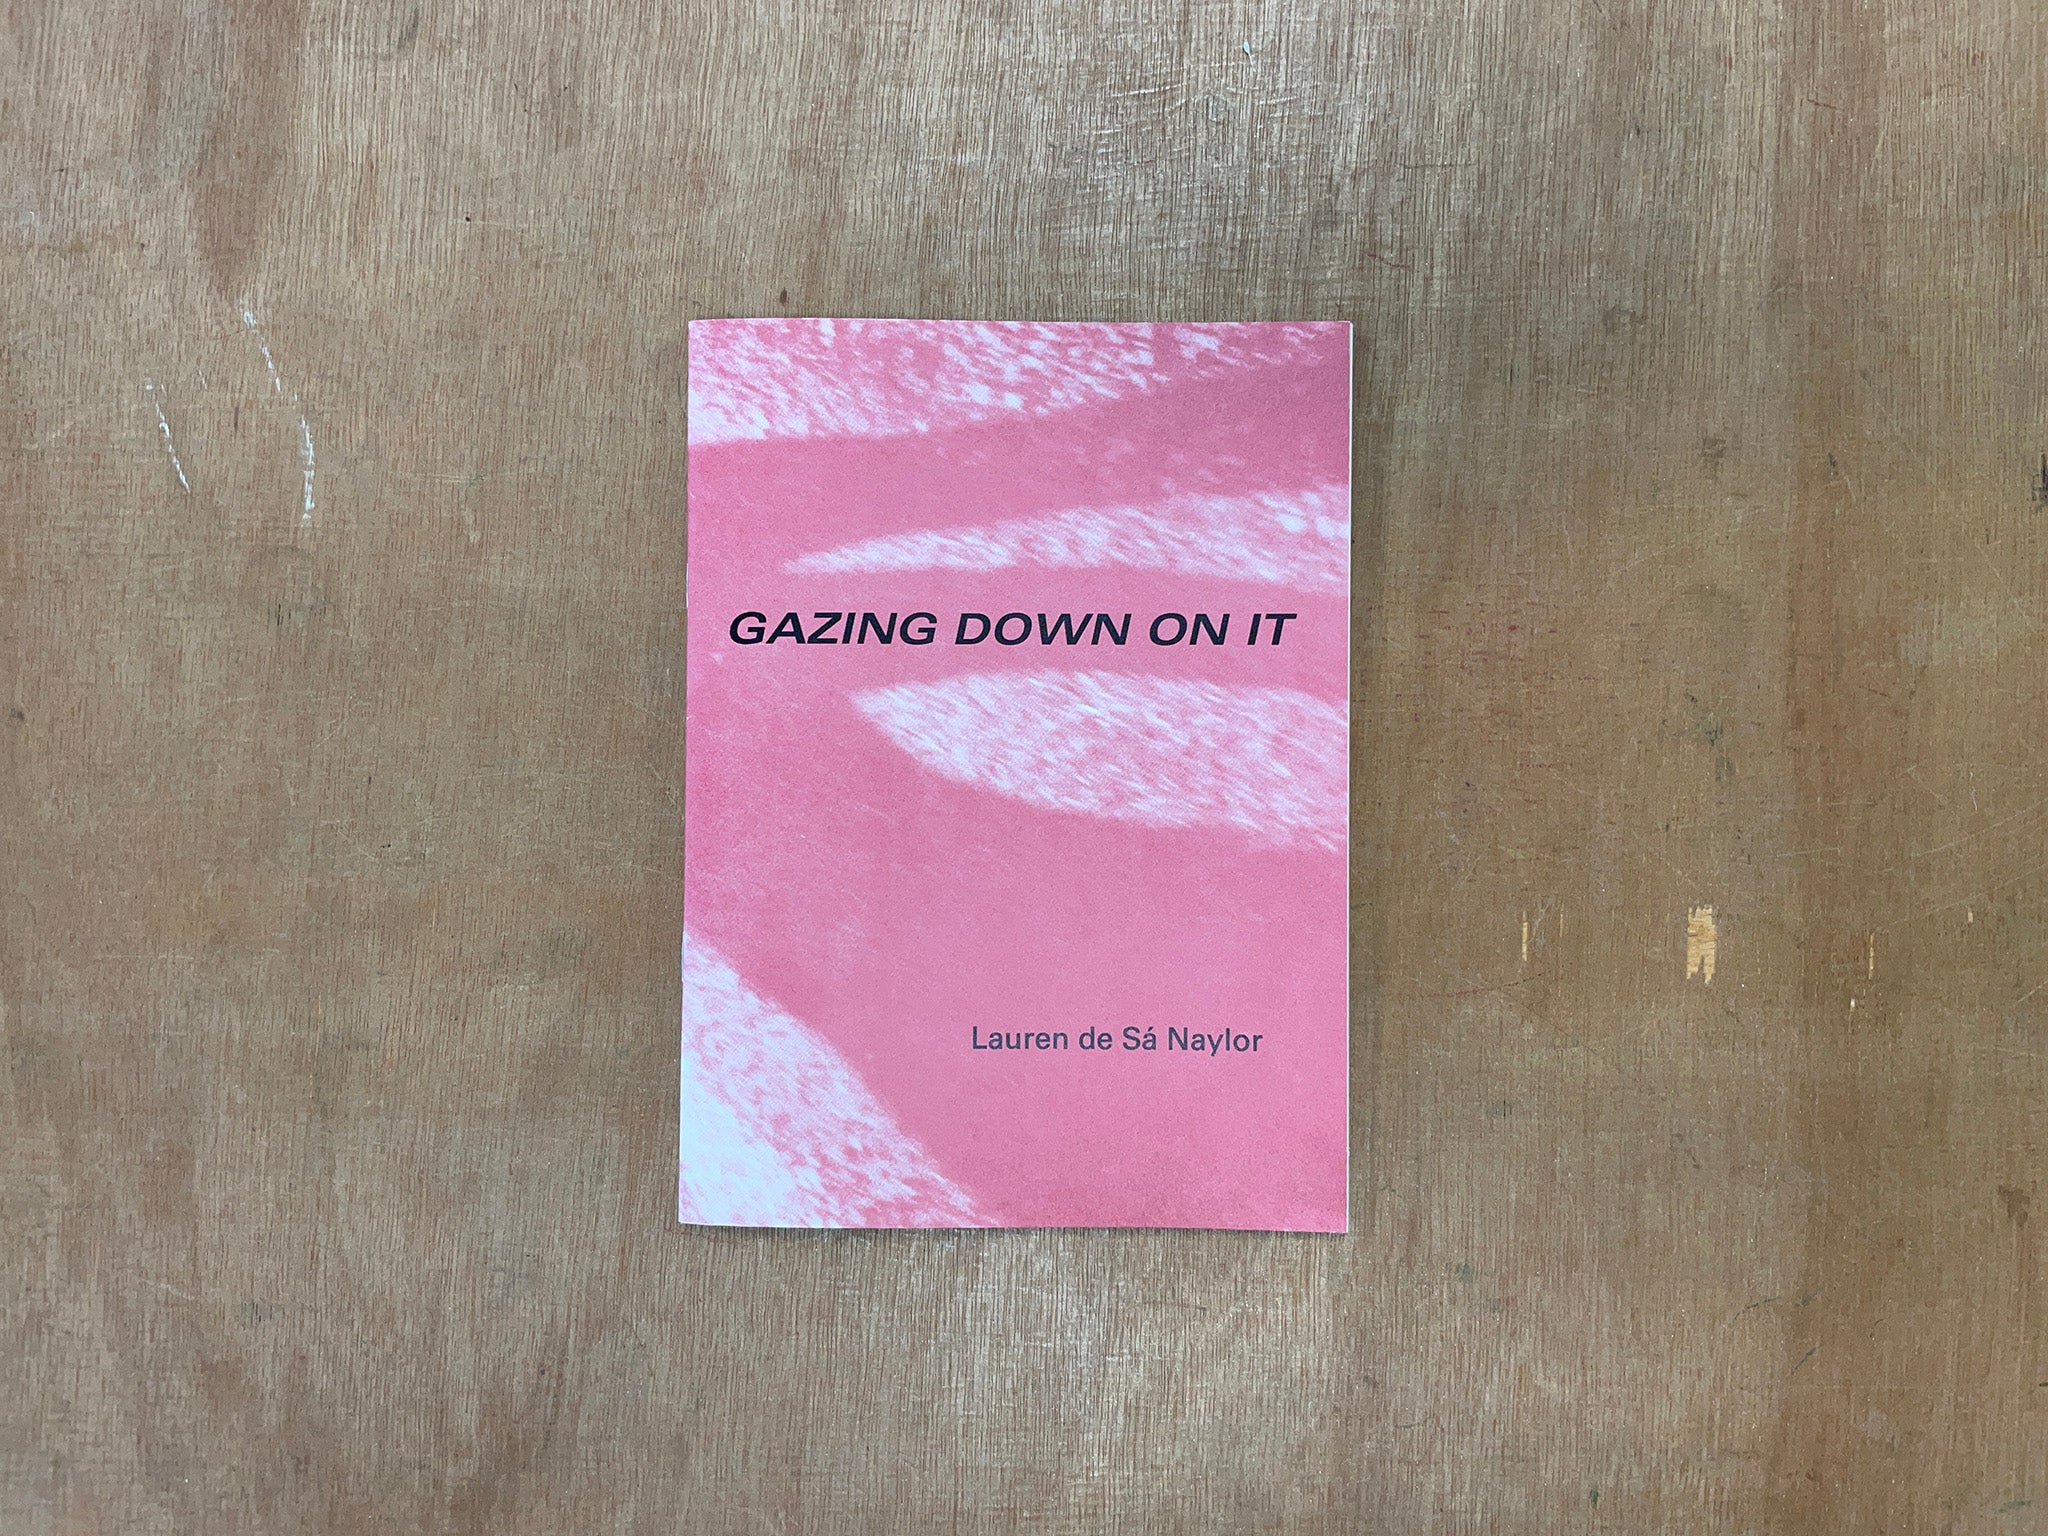 GAZING DOWN ON IT by Lauren de Sá Naylor